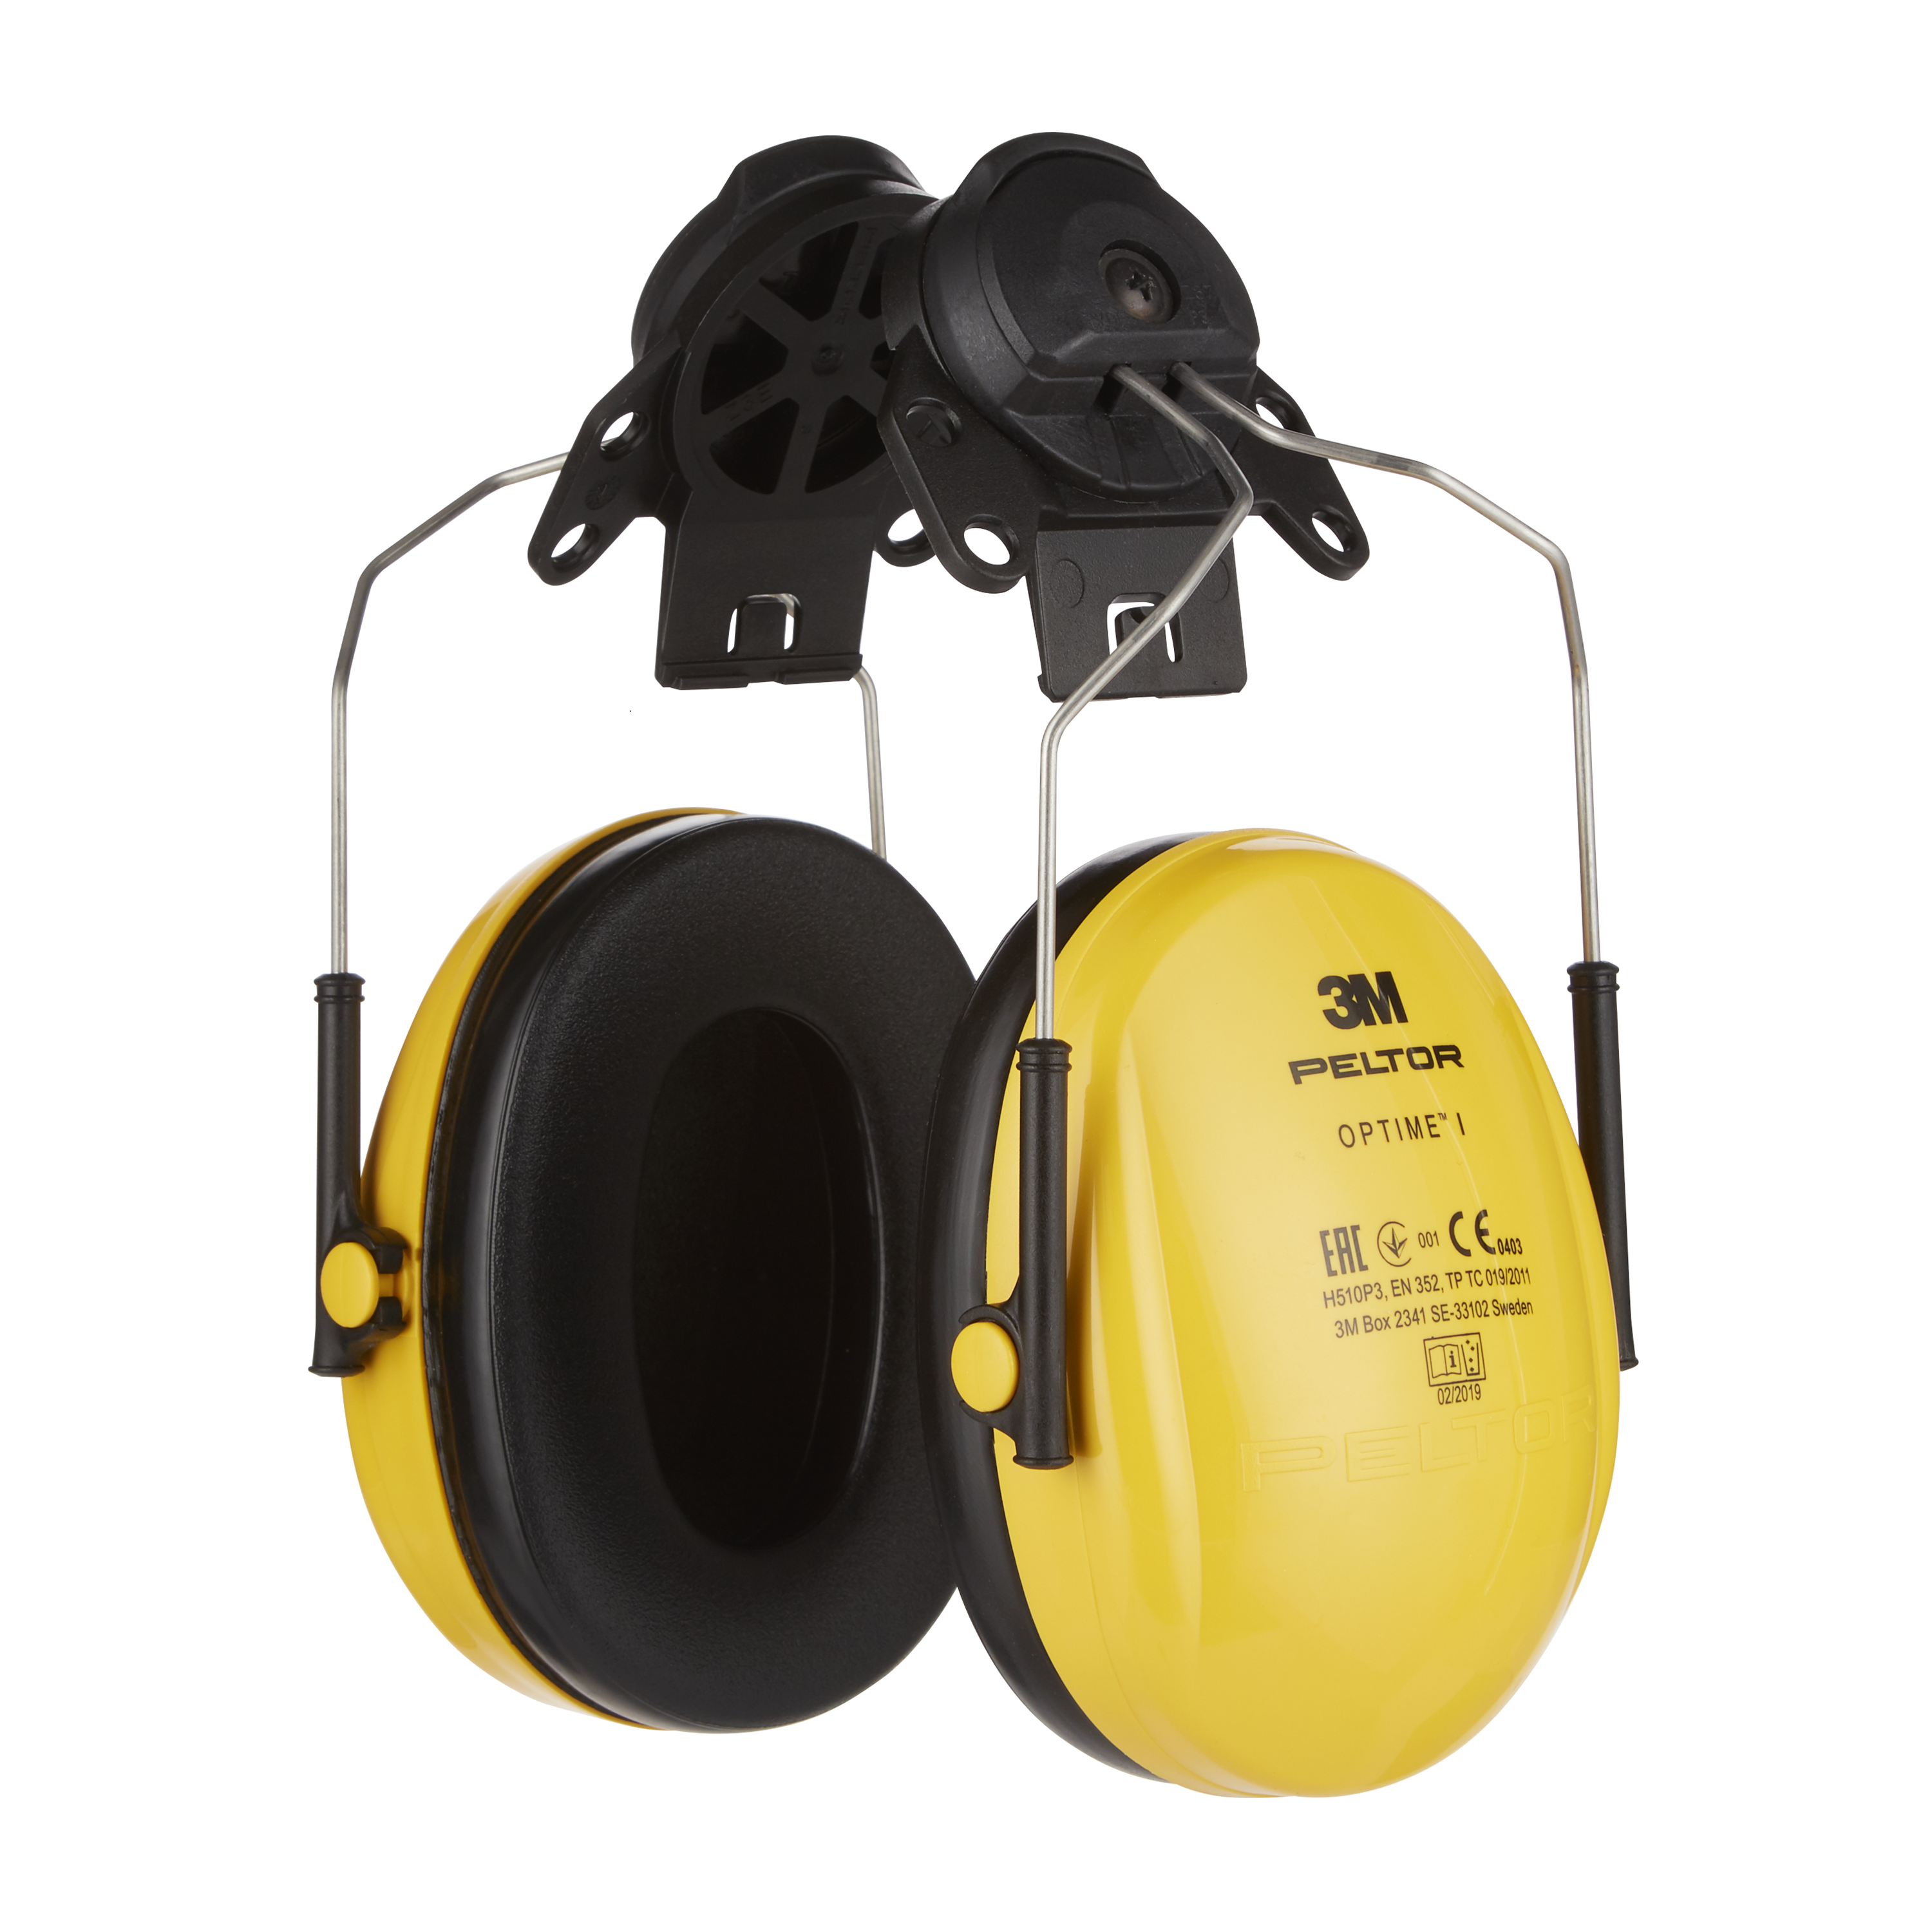 günstig | Komfort = Kapselgehörschutz kaufen I, Peltor 3M Optime 26 für Helm, gelb, SNR - H510P3, dB